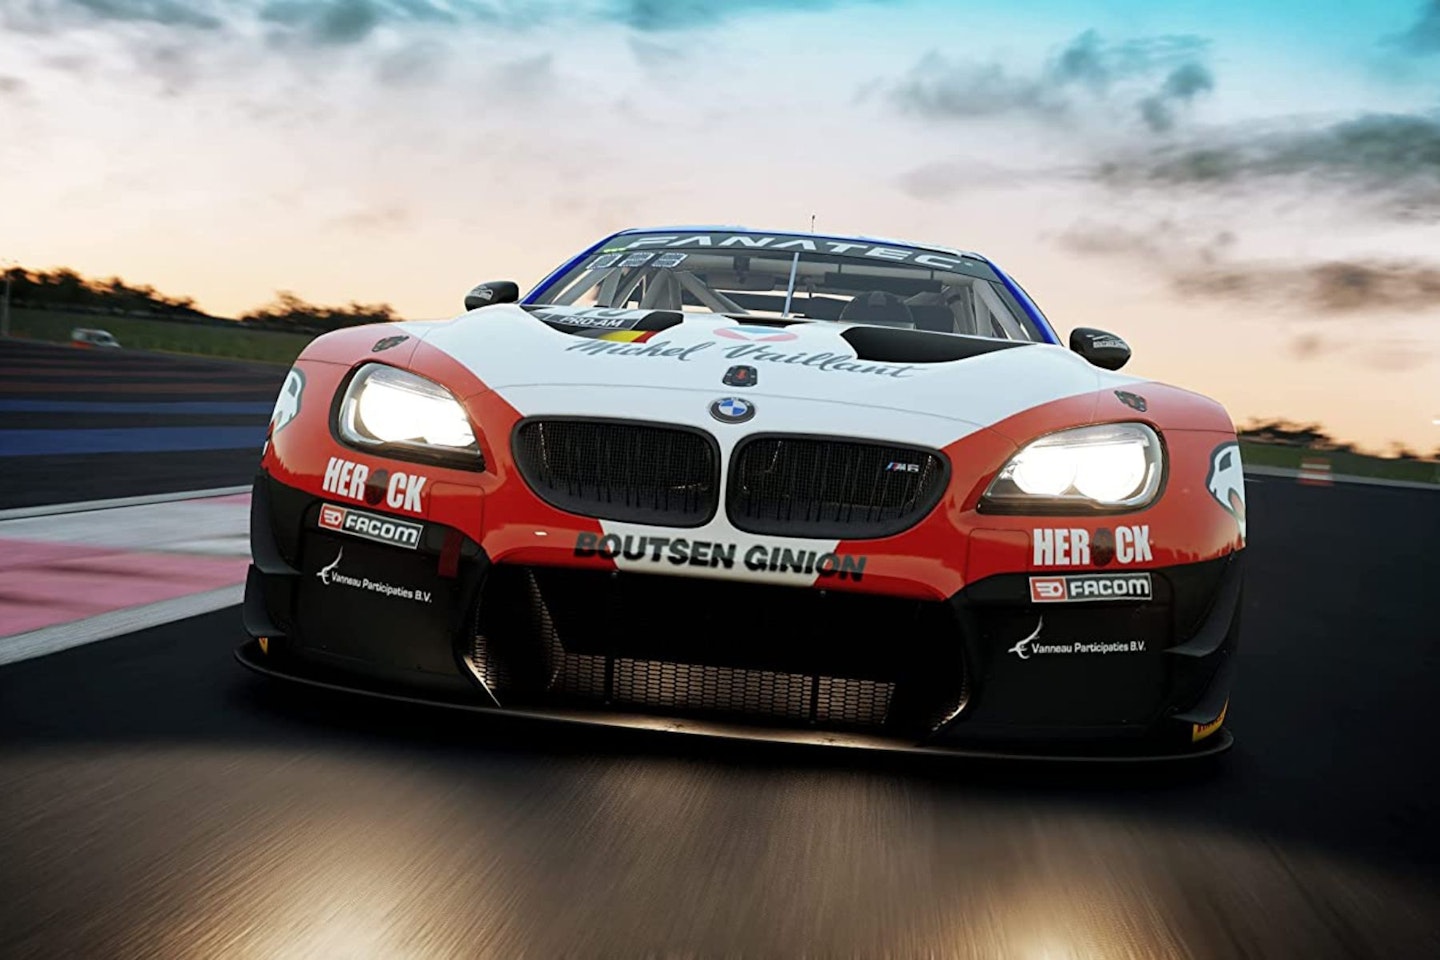 PS4 Car Racing Games - Inside Sim Racing